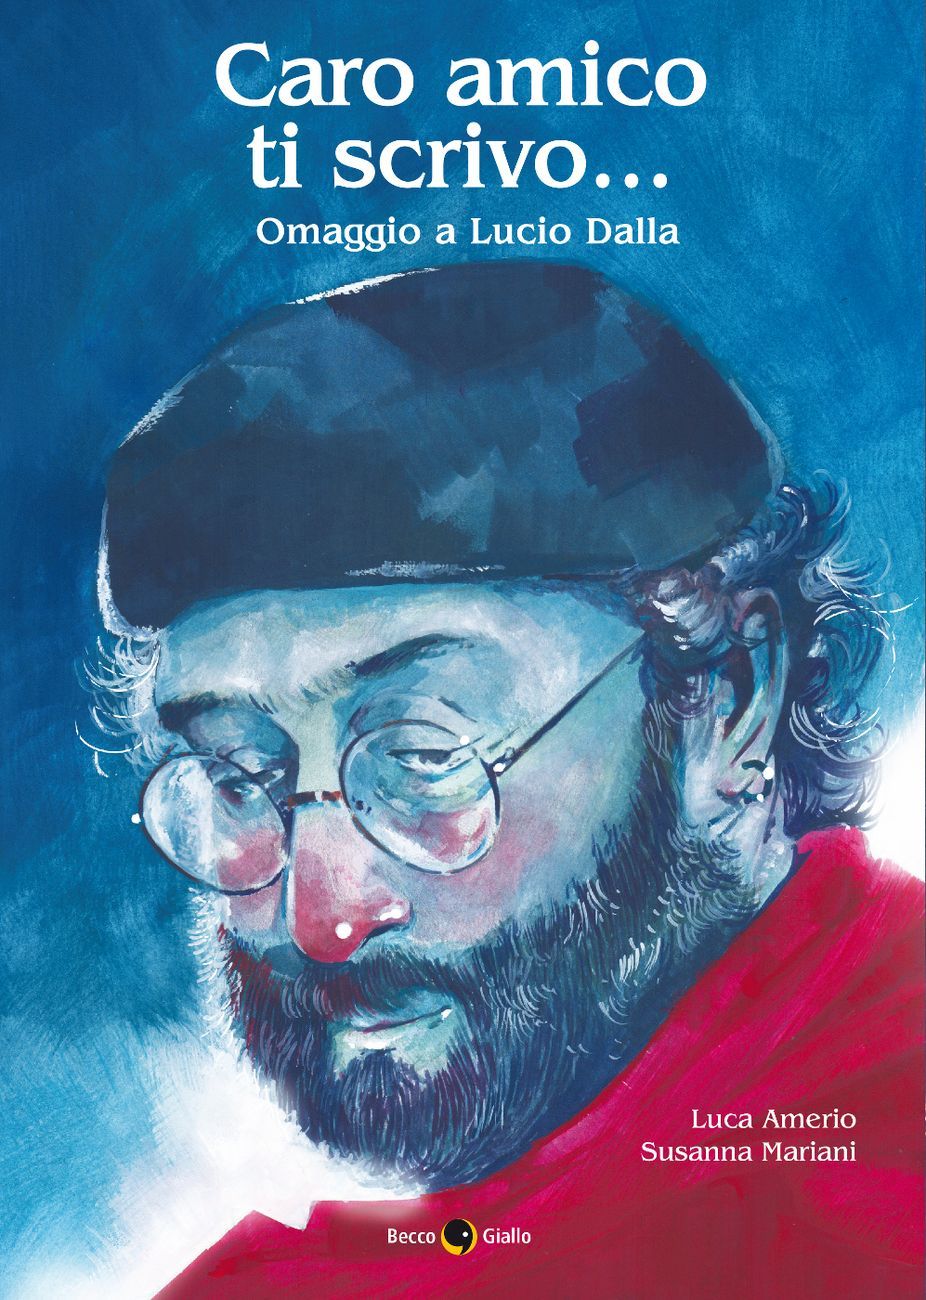 Luca Amerio e Susanna Mariani - Caro amico ti scrivo… Omaggio a Lucio Dalla (BeccoGiallo, Padova 2019)